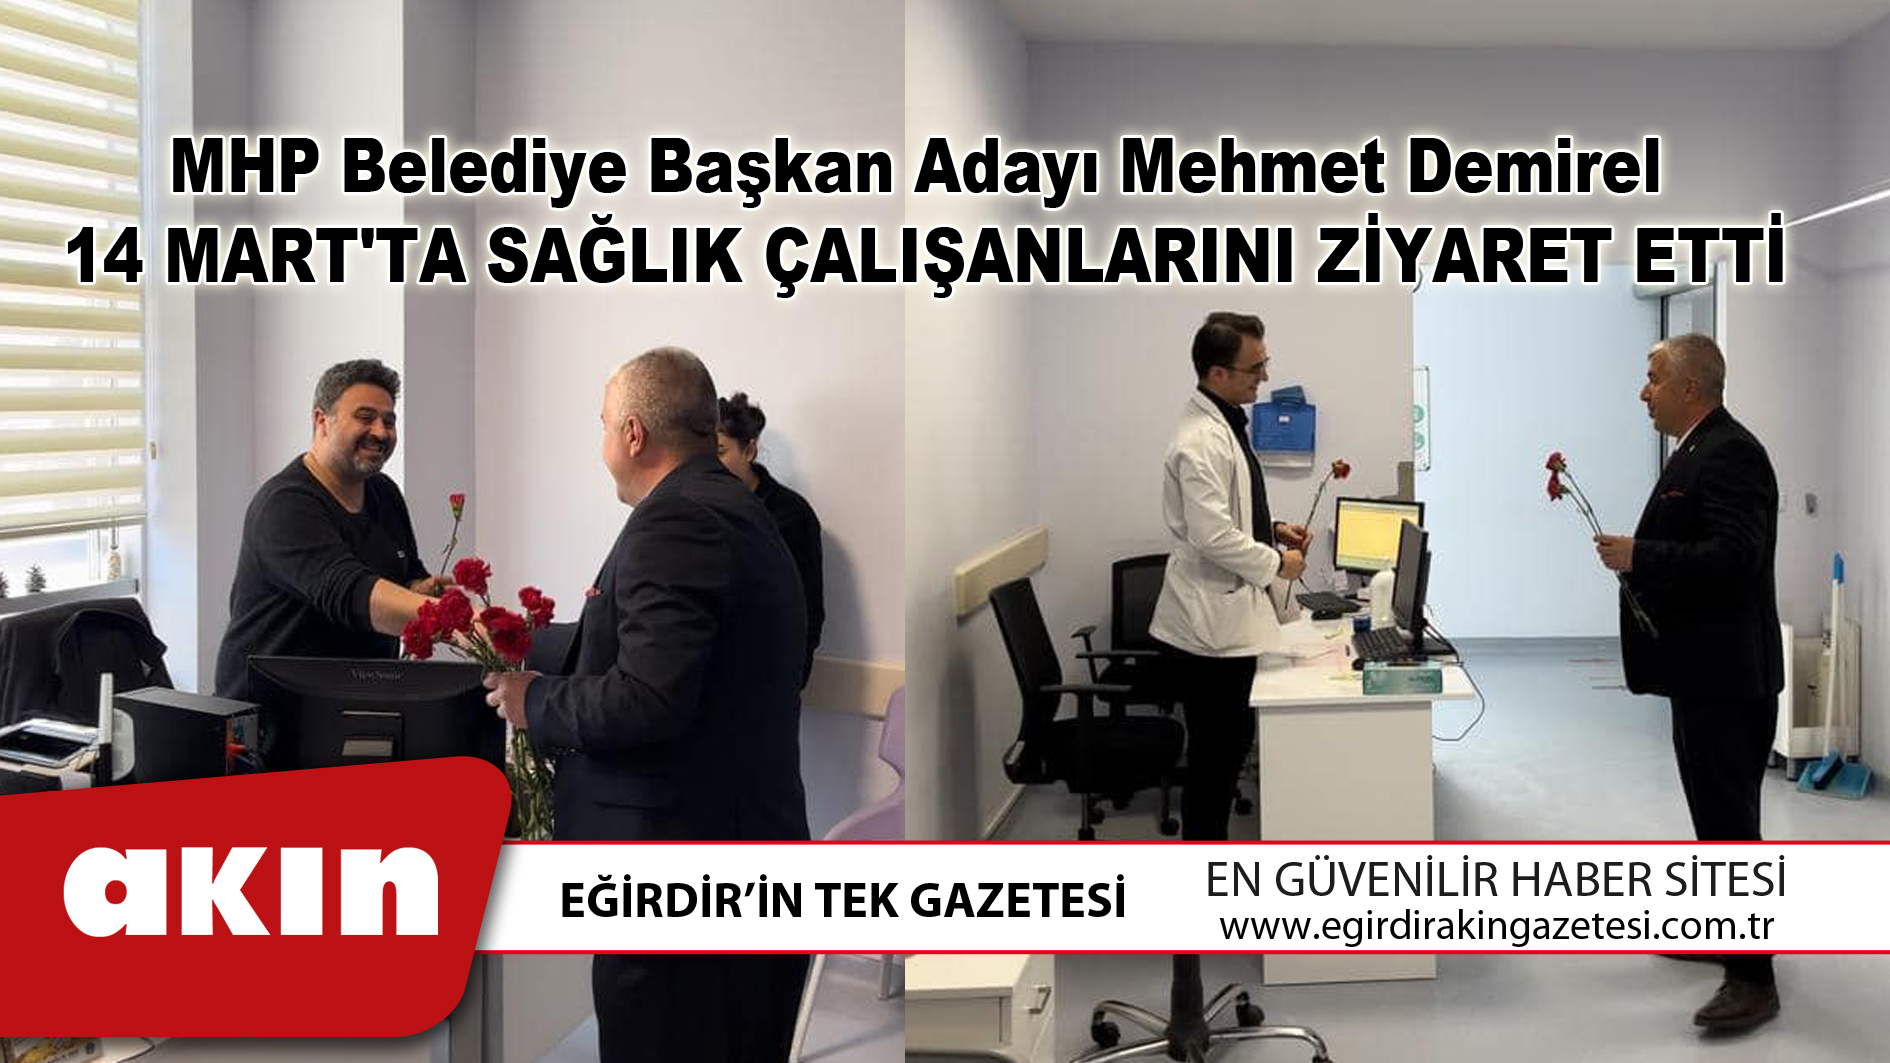 MHP Belediye Başkan Adayı Mehmet Demirel, 14 Mart'ta Sağlık Çalışanlarını Ziyaret Etti